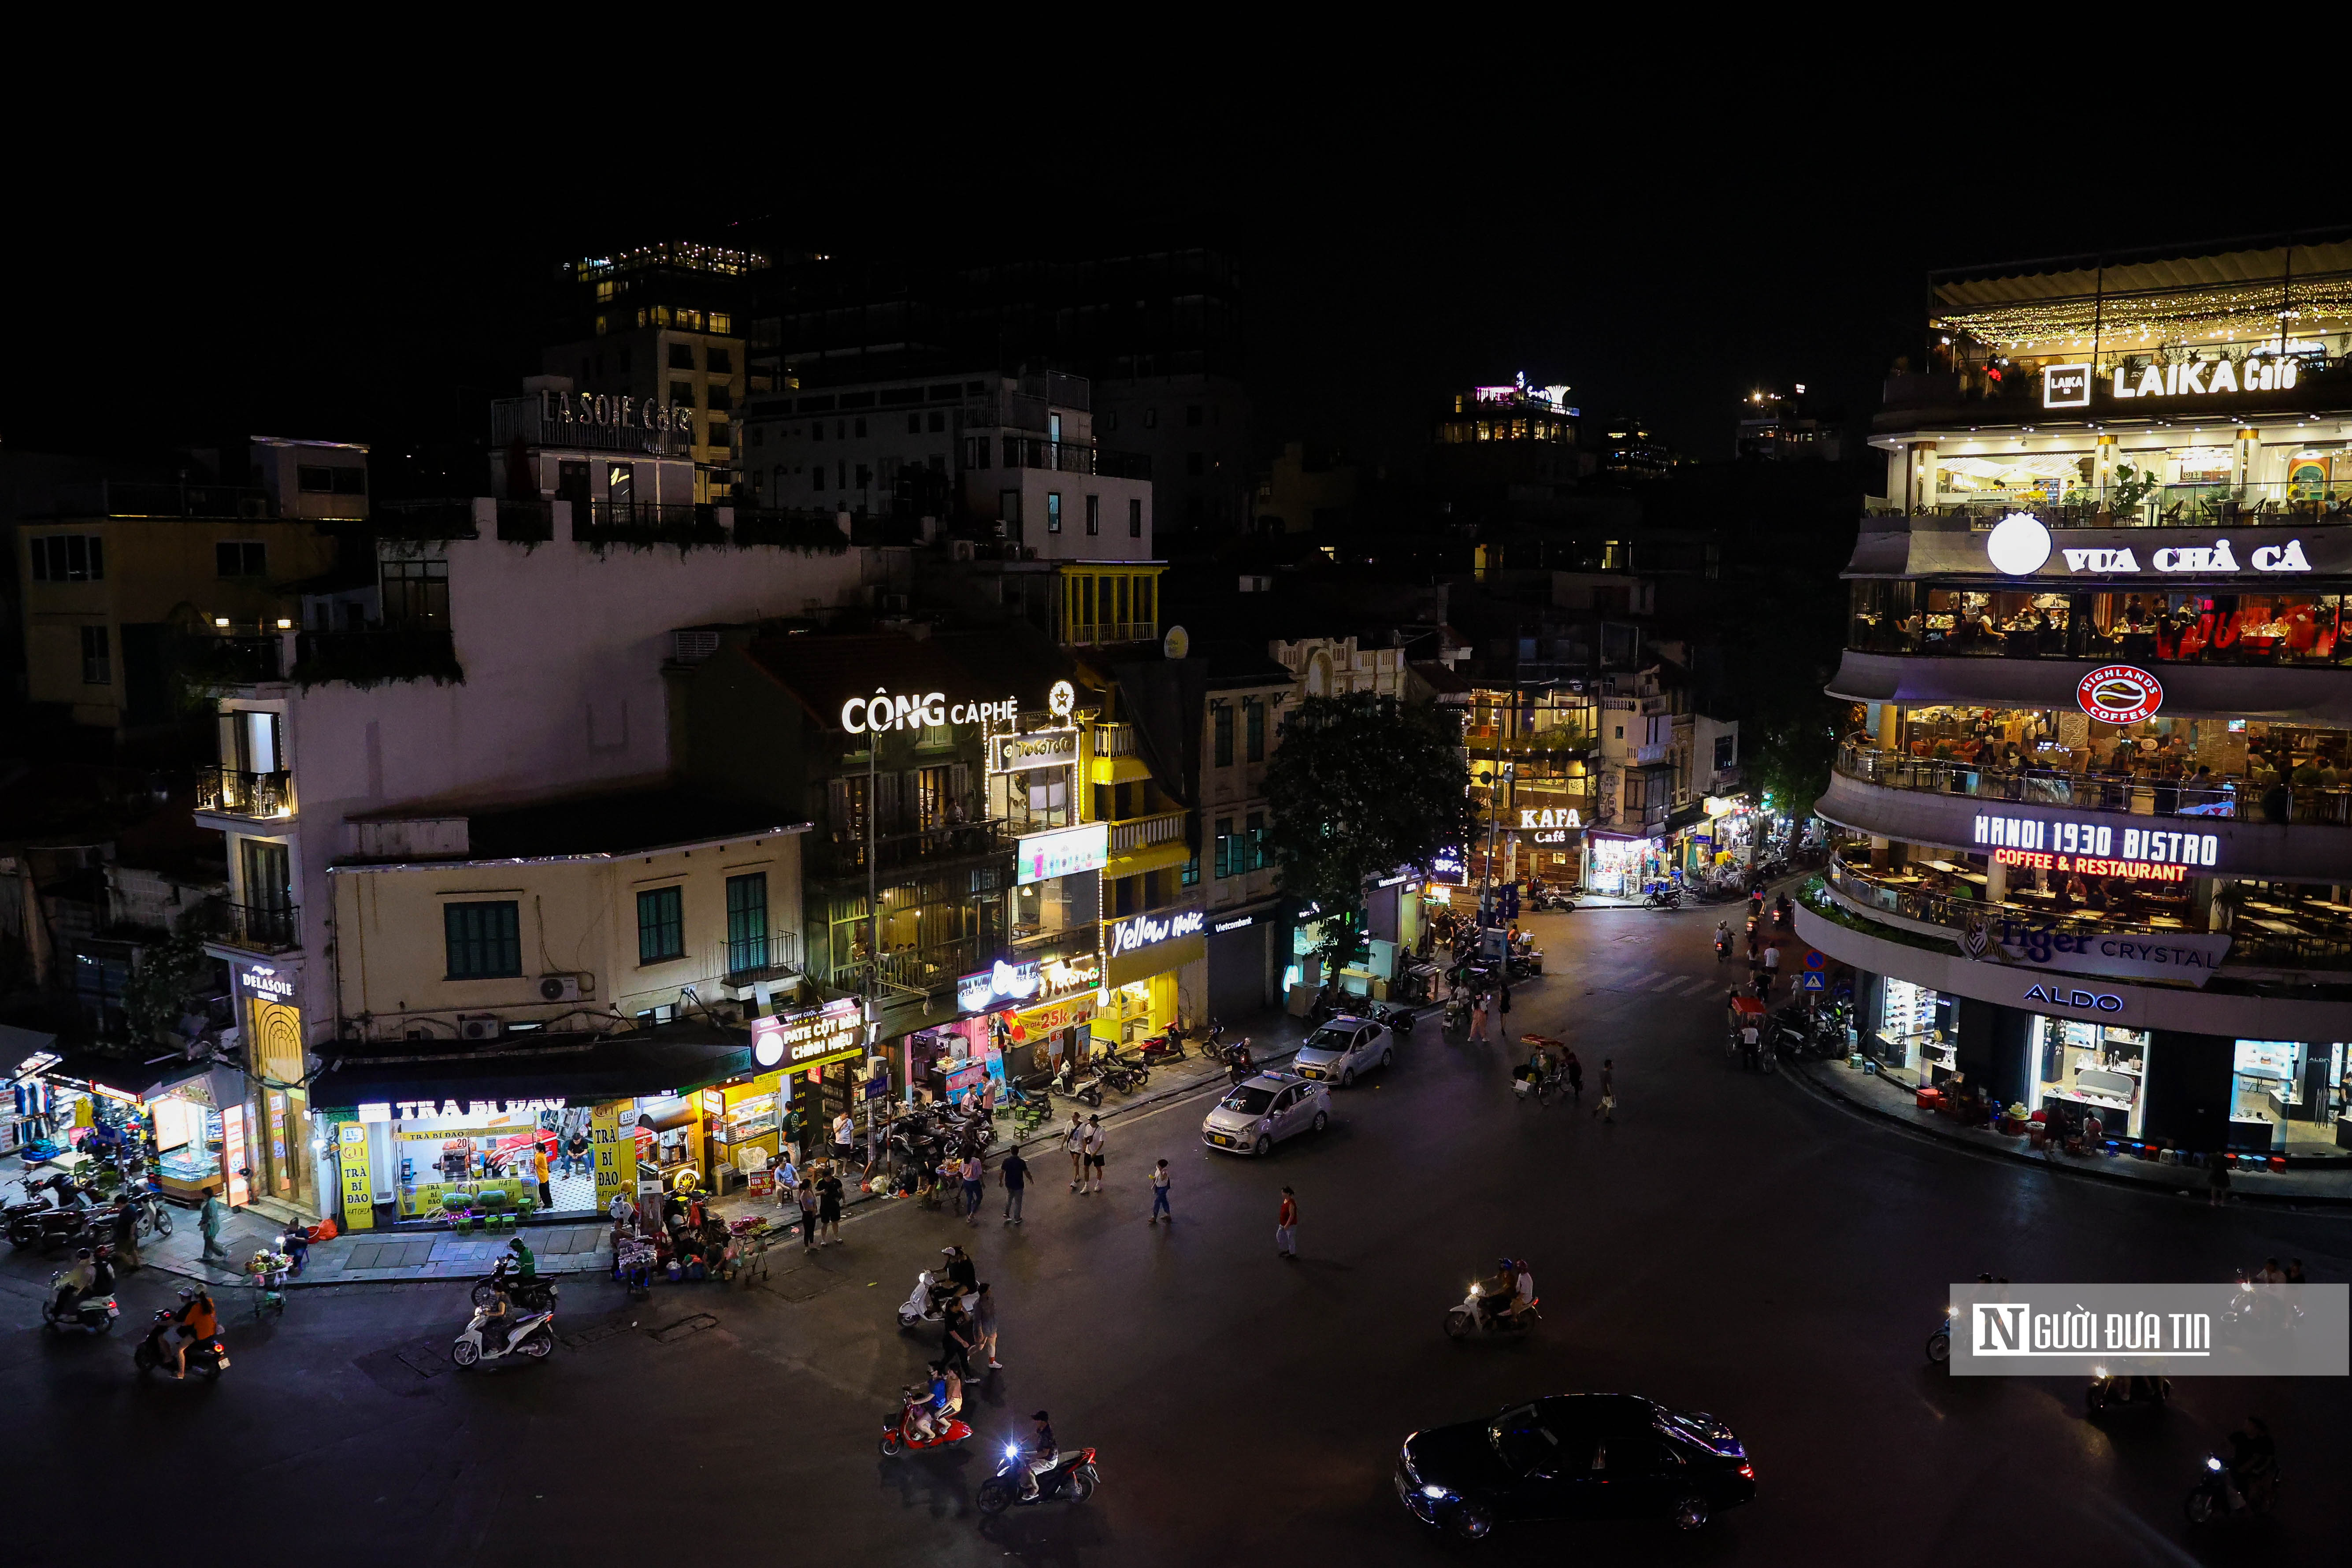 Dân sinh - Hà Nội: Nhiều tuyến đường, tòa nhà tối sầm vì cắt giảm tiêu thụ điện (Hình 6).